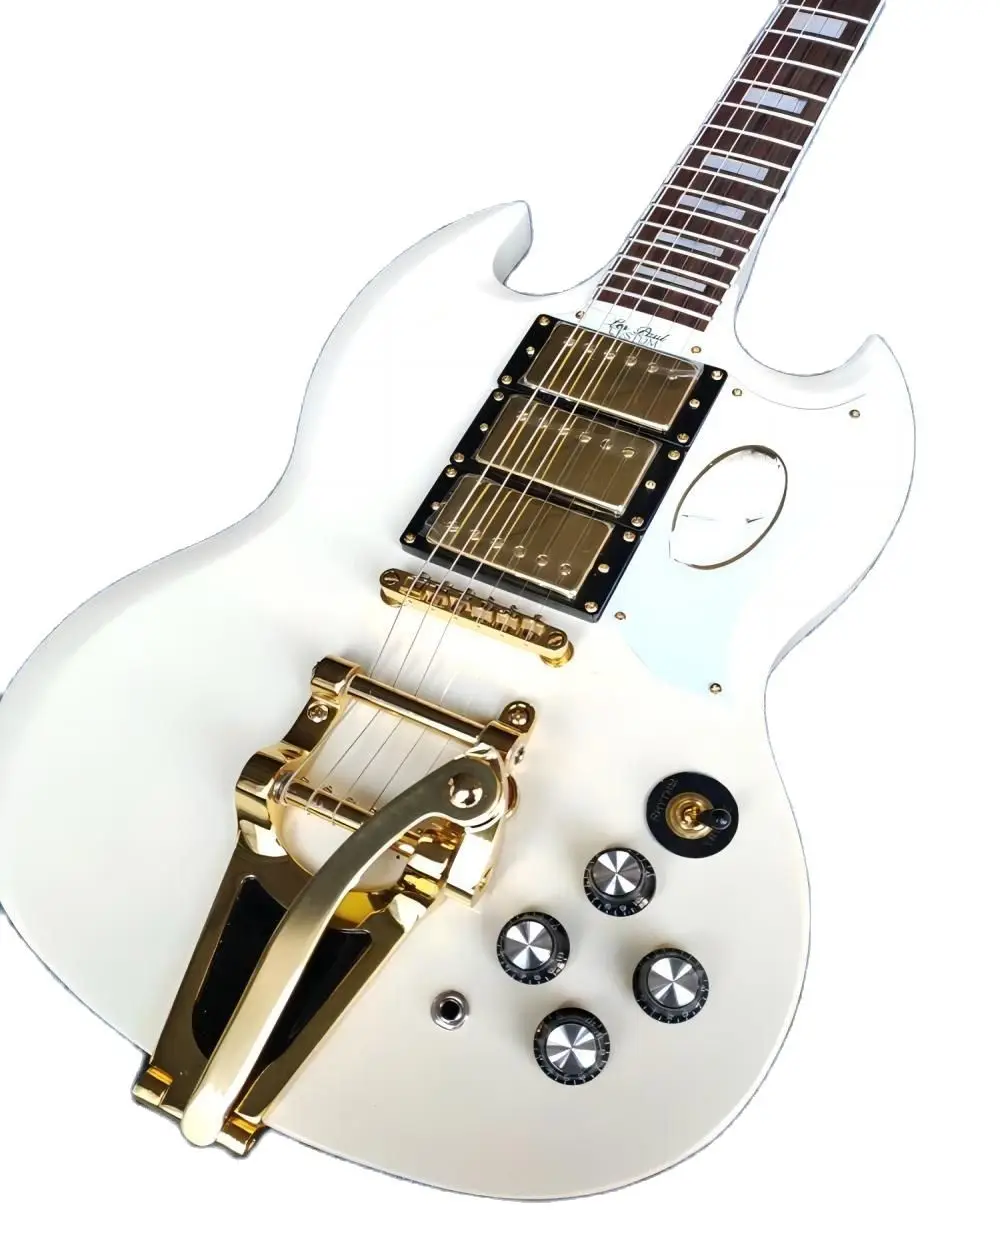 

Фабричное производство, высокое качество, кремовый цвет, 6-струнная правая электрическая гитара